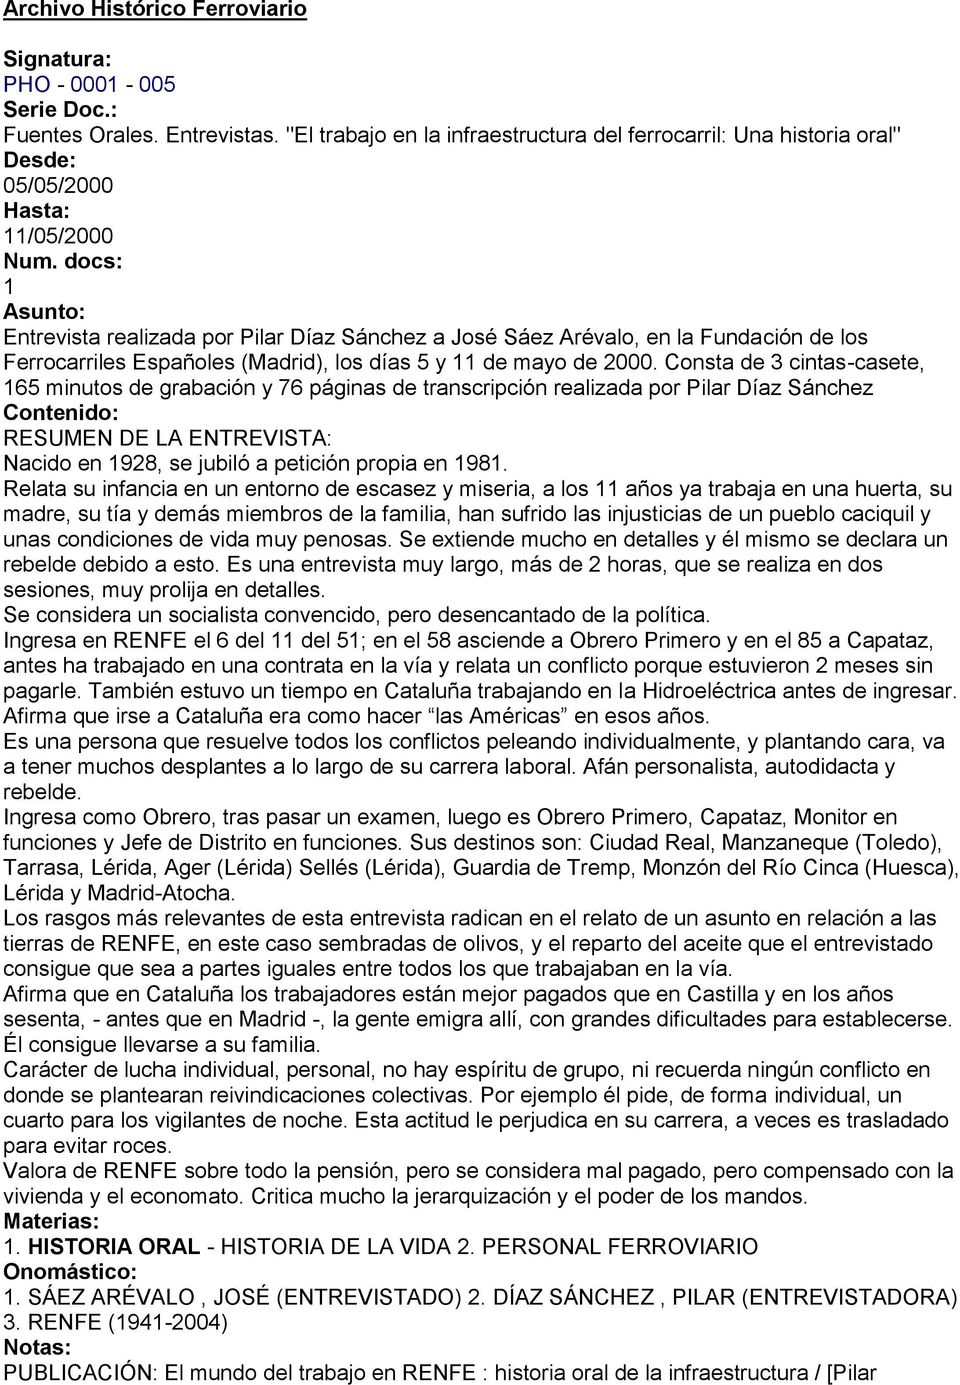 docs: 1 Asunto: Entrevista realizada por Díaz Sánchez a José Sáez Arévalo, en la Fundación de los Ferrocarriles Españoles (Madrid), los días 5 y 11 de mayo de 2000.